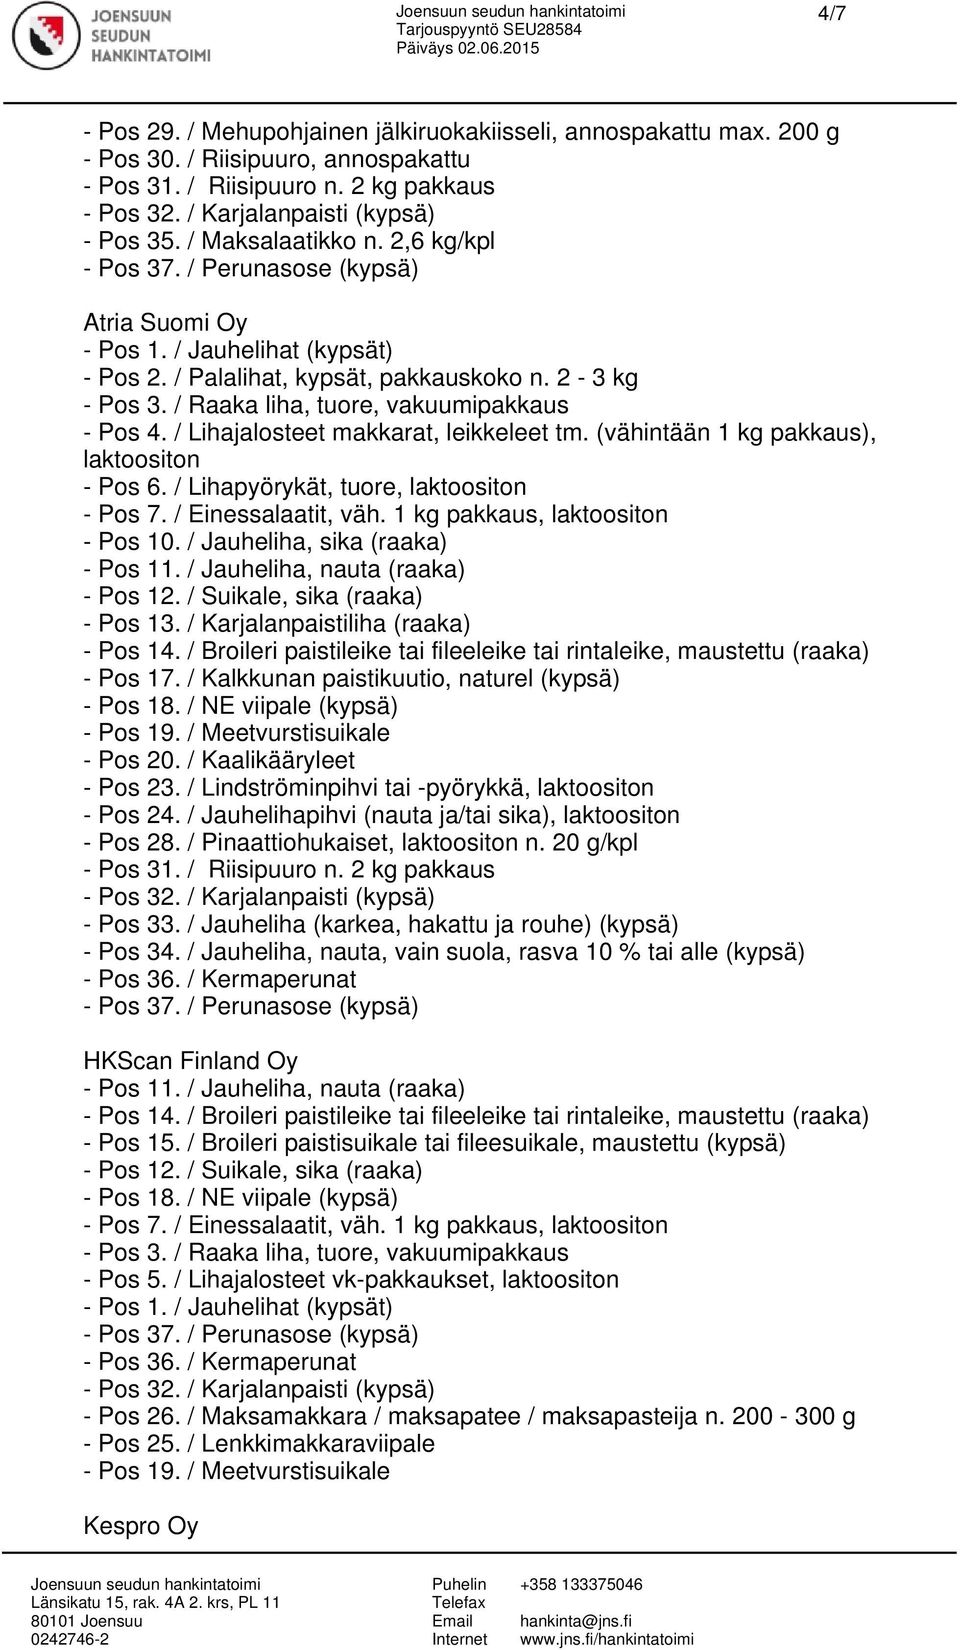 / Karjalanpaistiliha (raaka) - Pos 14. / Broileri paistileike tai fileeleike tai rintaleike, maustettu (raaka) - Pos 17. / Kalkkunan paistikuutio, naturel (kypsä) - Pos 23.